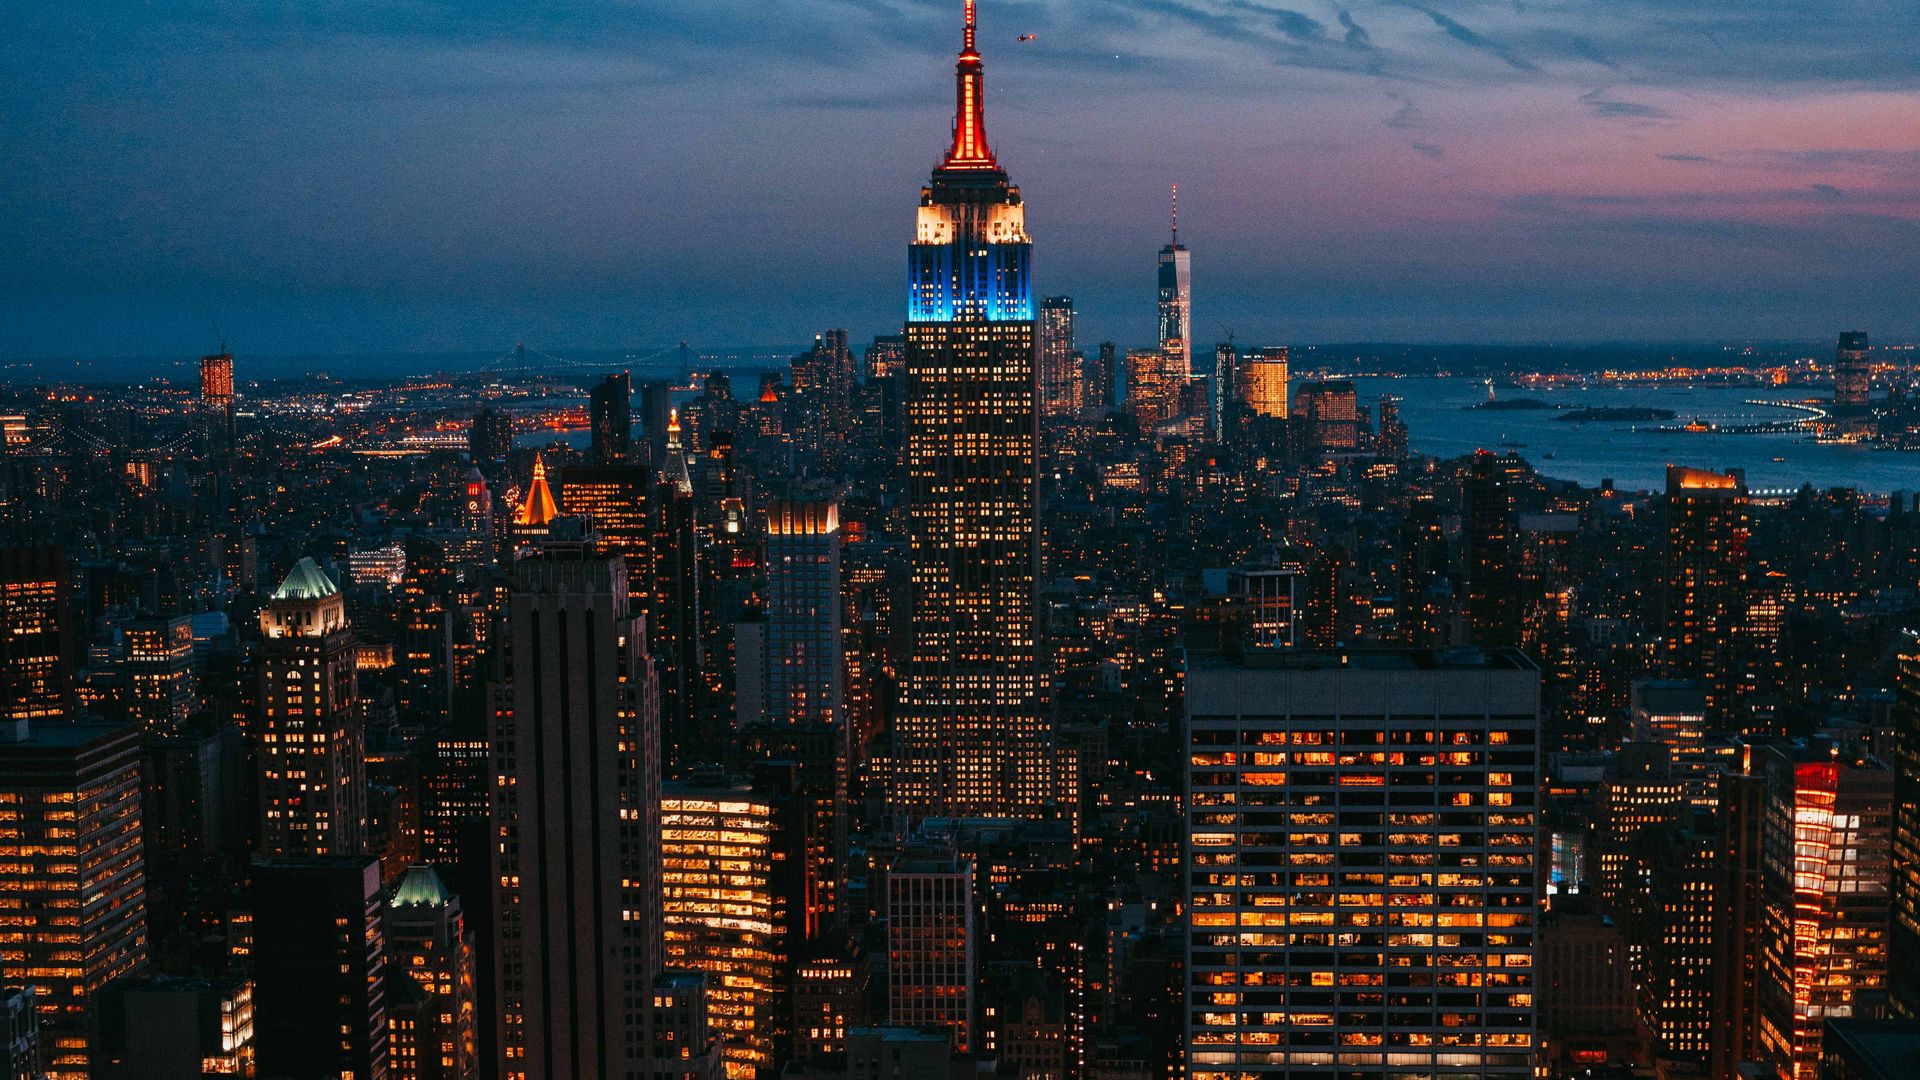 Với độ phân giải 1920x1080 cực kỳ sắc nét, tải ngay hình nền đêm thành phố đèn neon, skyscraper để cảm nhận được sự phóng khoáng của các tòa nhà chọc trời kết hợp với những tia sáng neon lung linh - một tác phẩm nghệ thuật ánh sáng ngoạn mục. 